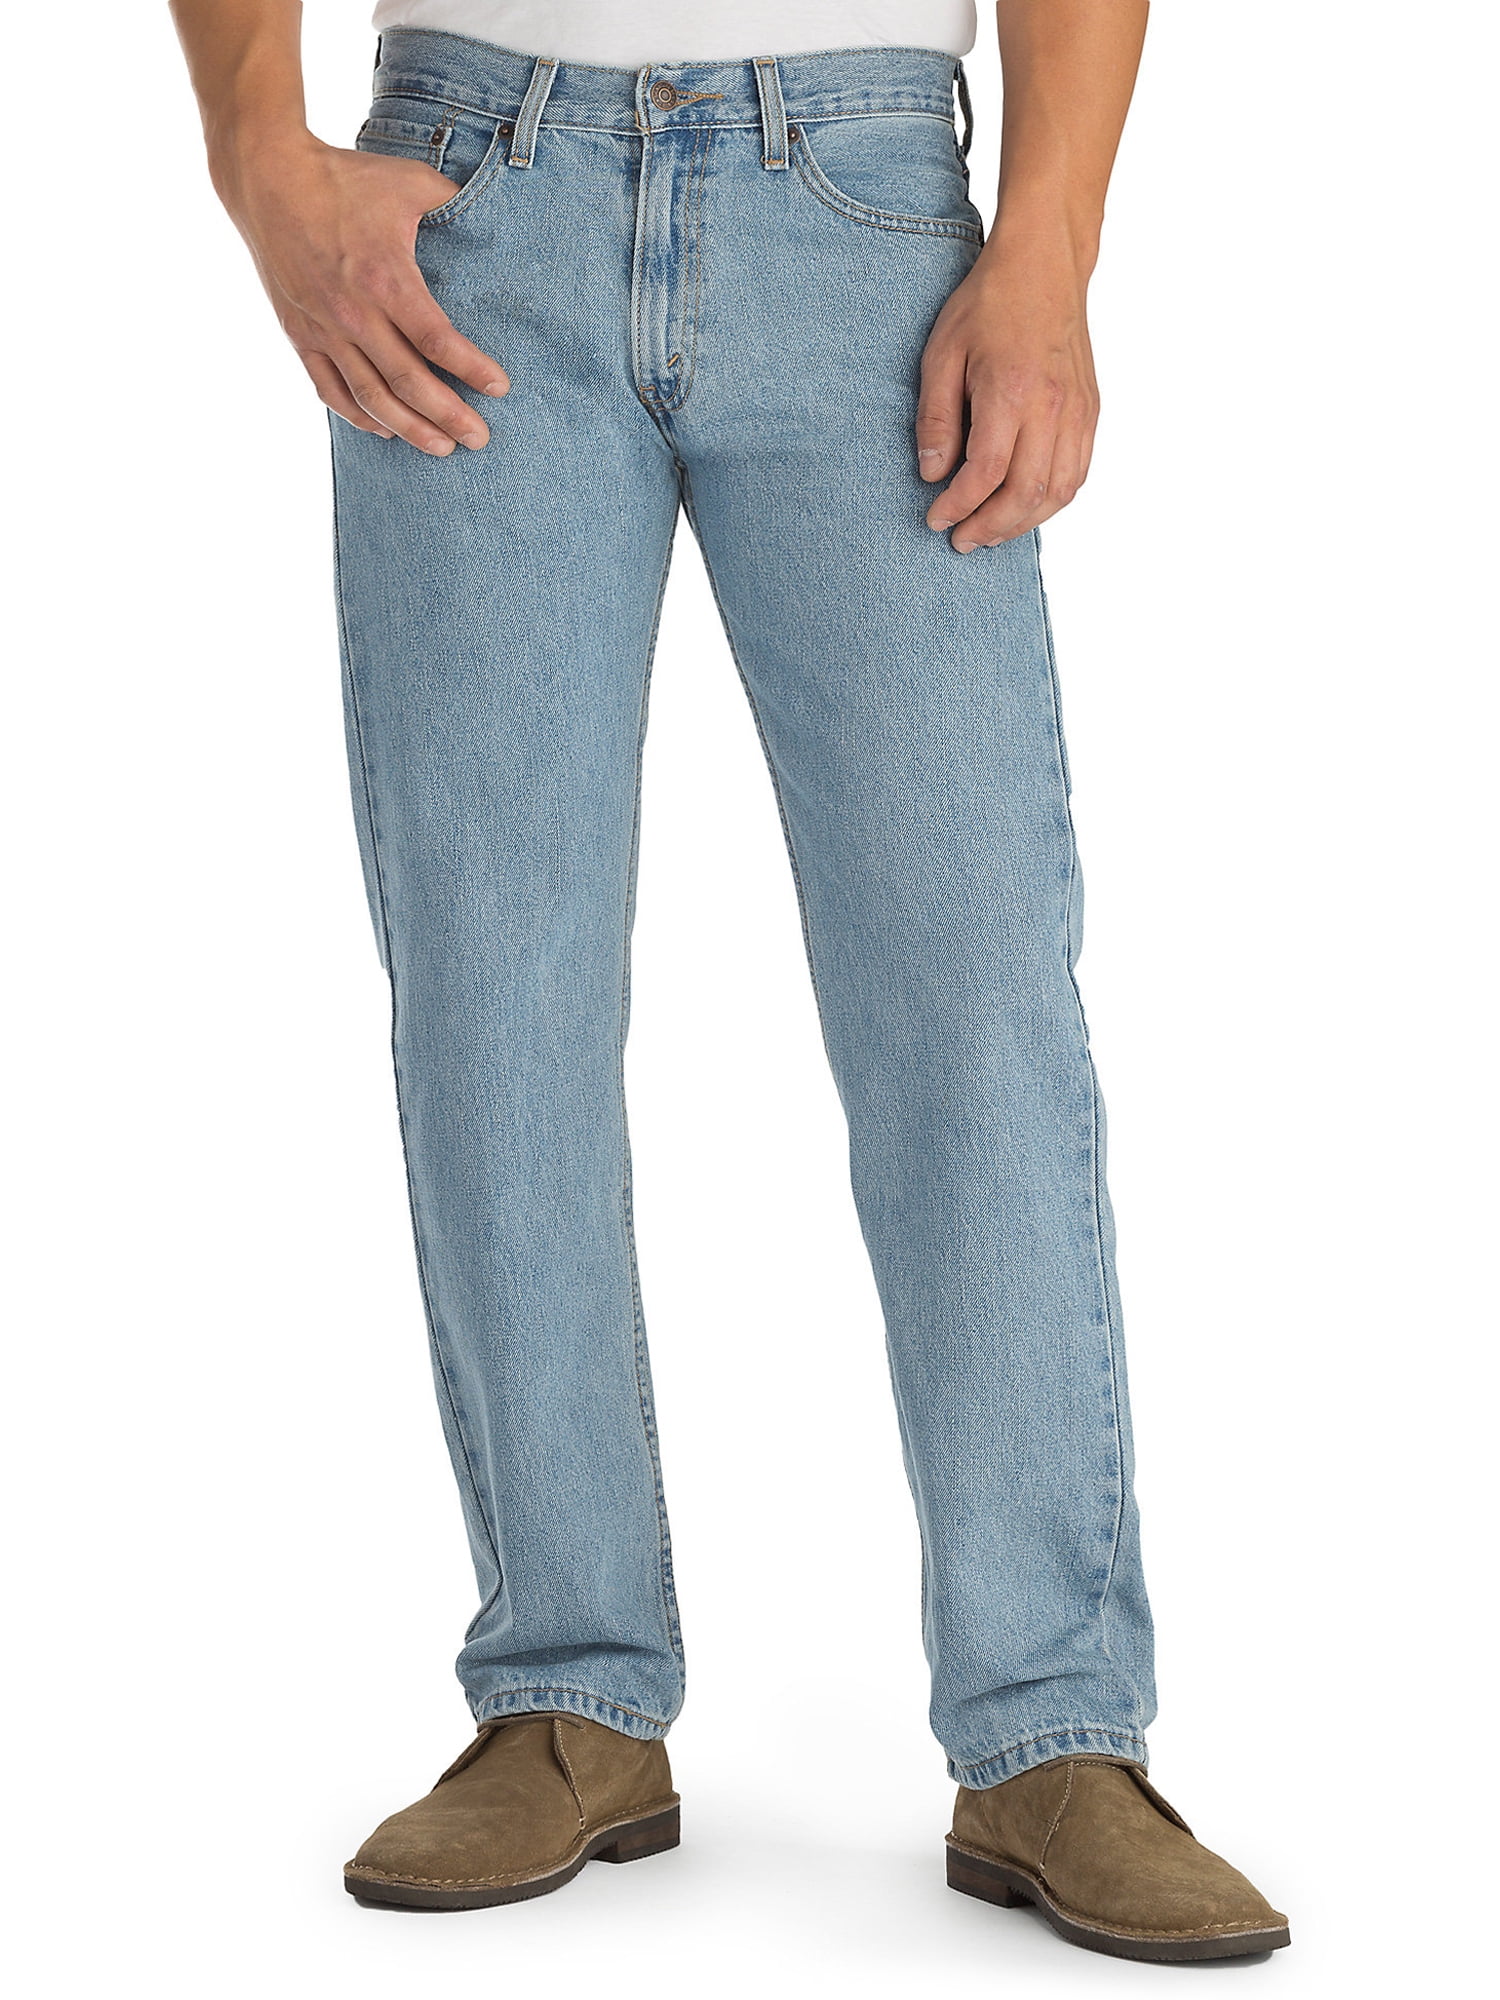 Actualizar 71+ imagen levis signature men’s jeans